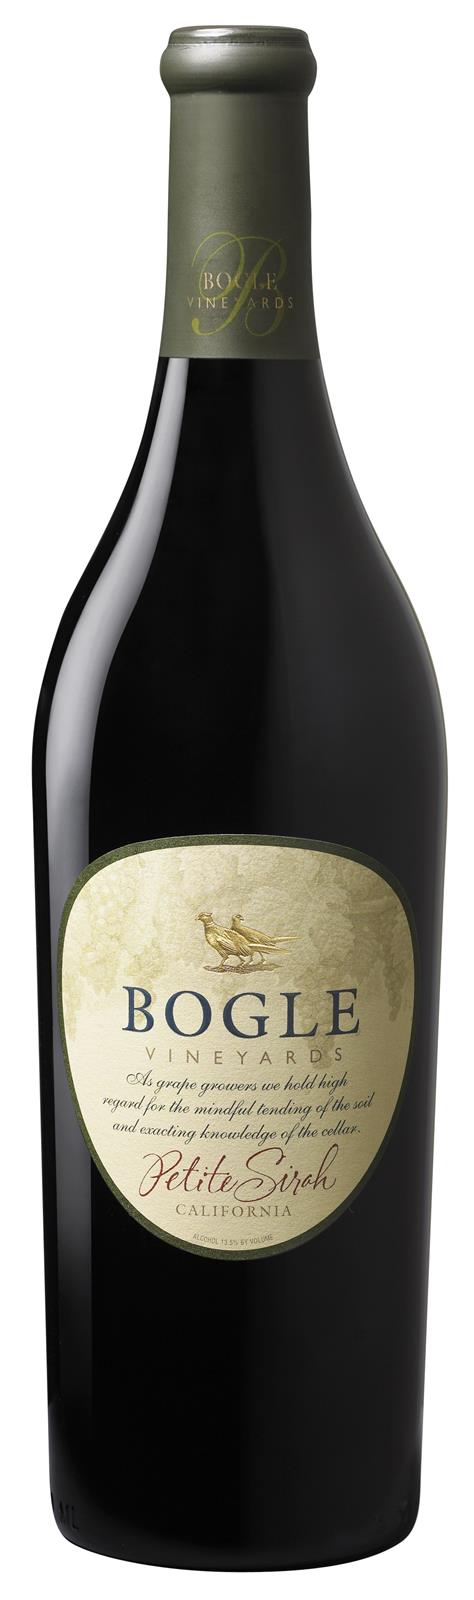 Bogle Vineyards Petite Sirah 2018 (California)